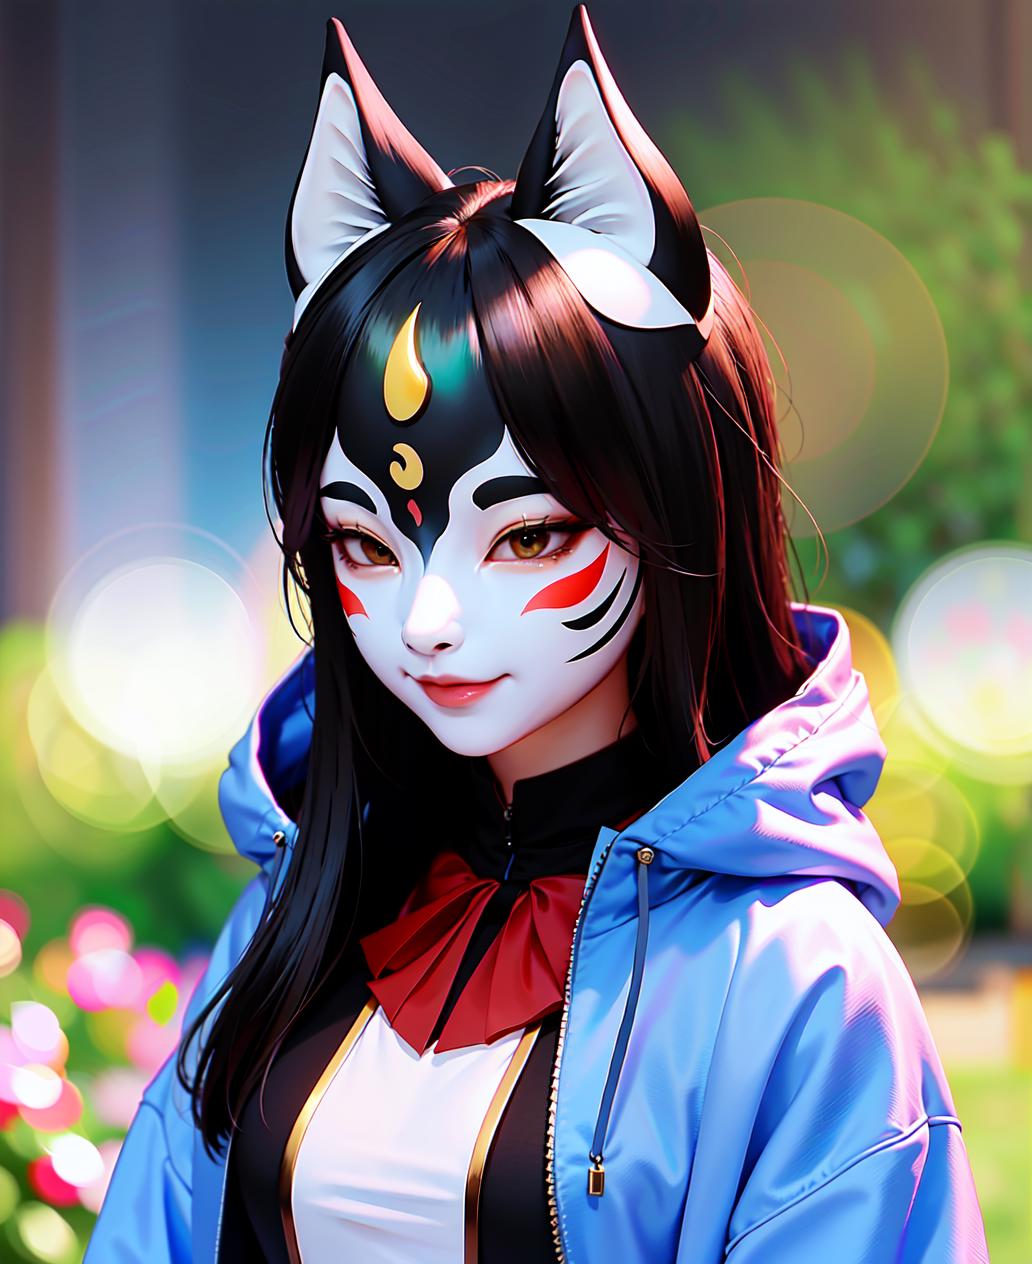 YaokaiMask-kitsune | 妖狐面具 image by YeHeAI